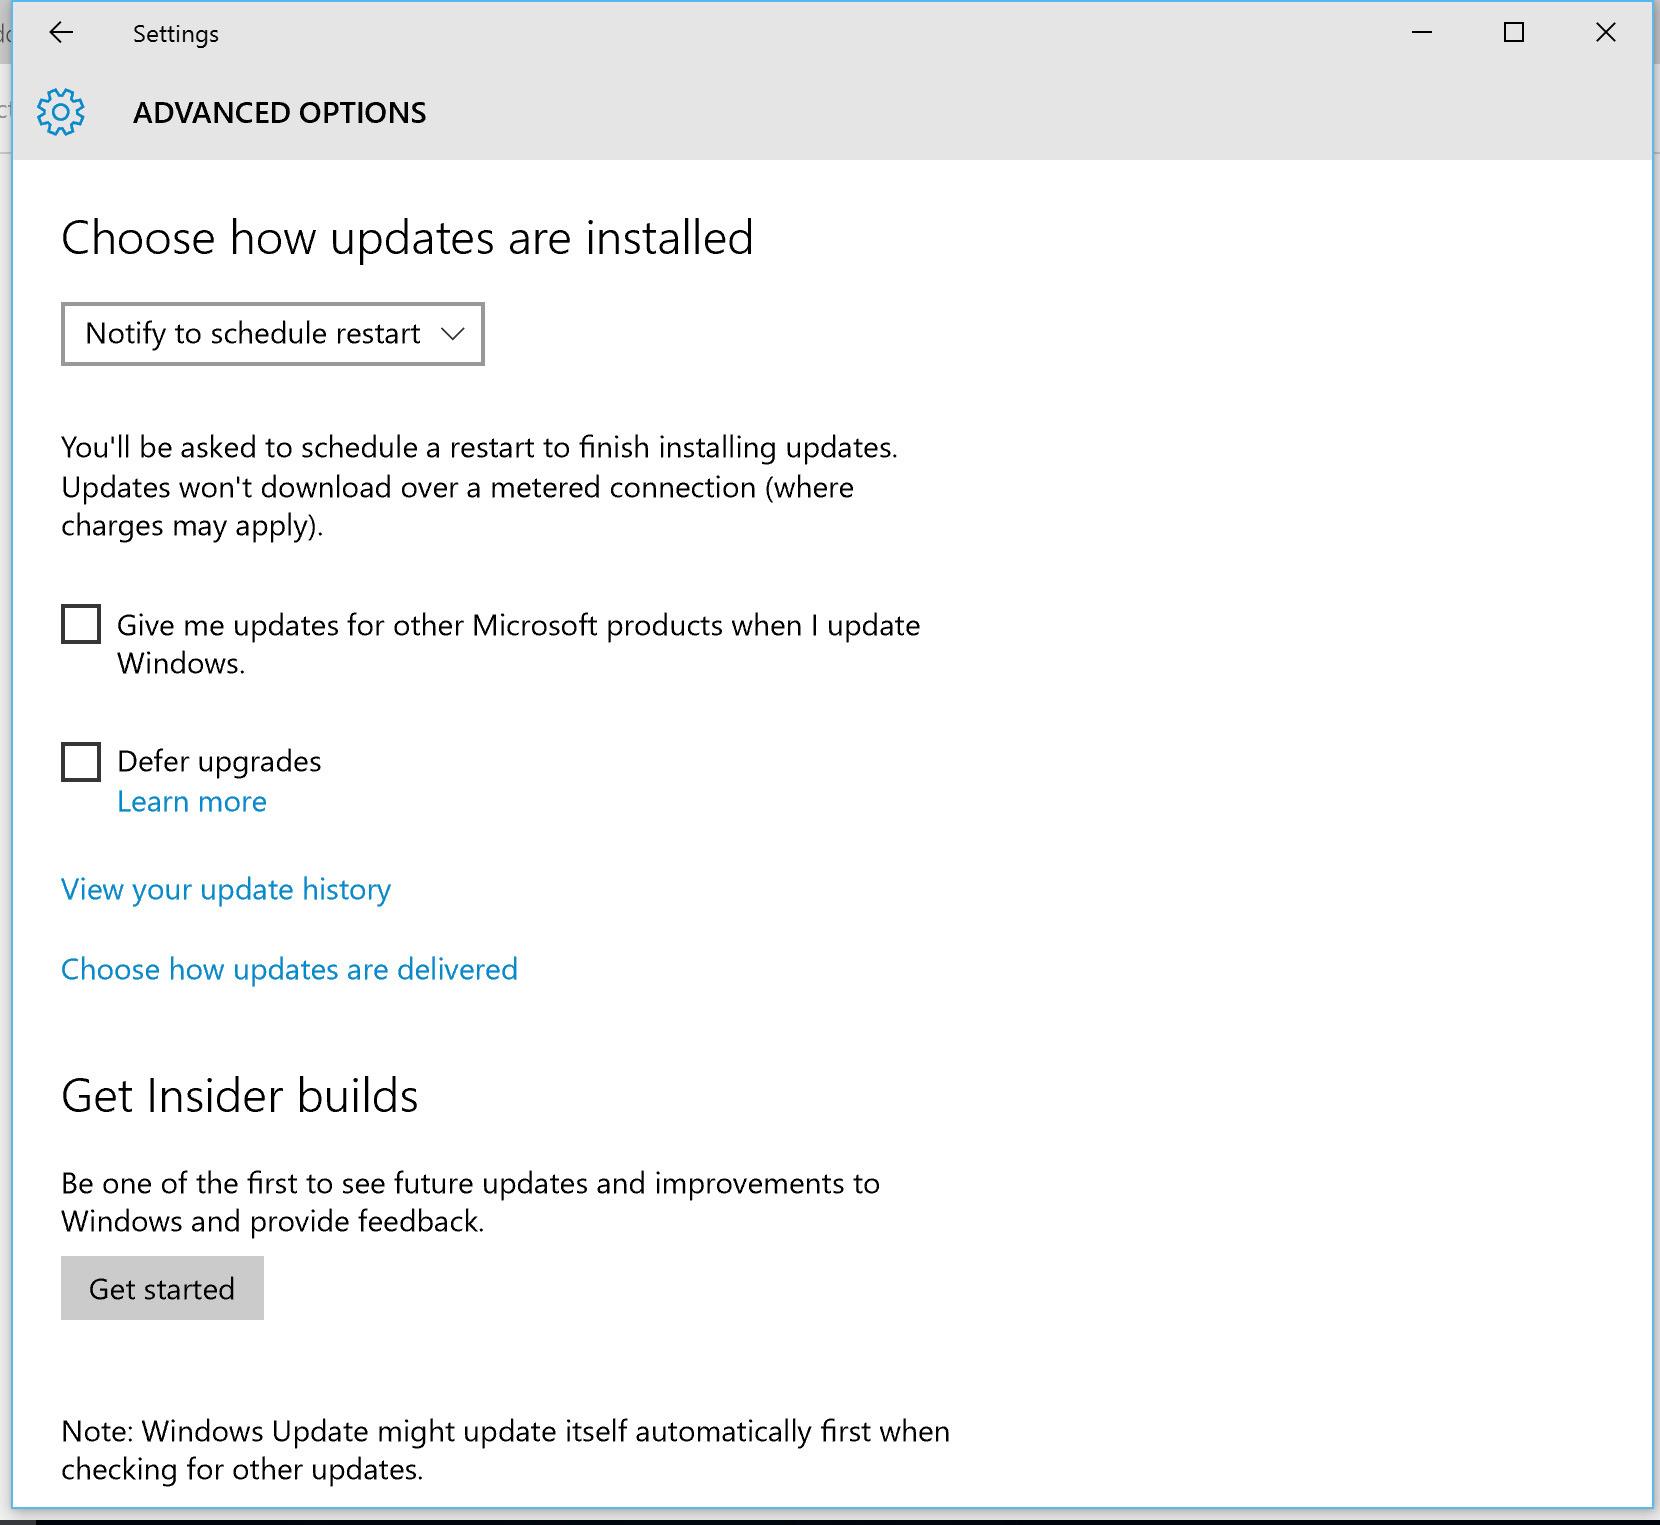 Du får gjøre noen oppdateringsvalg selv, men de viktige oppdateringene lar seg ikke hoppe over med Windows 10. Foto: Finn Jarle Kvalheim, Tek.no